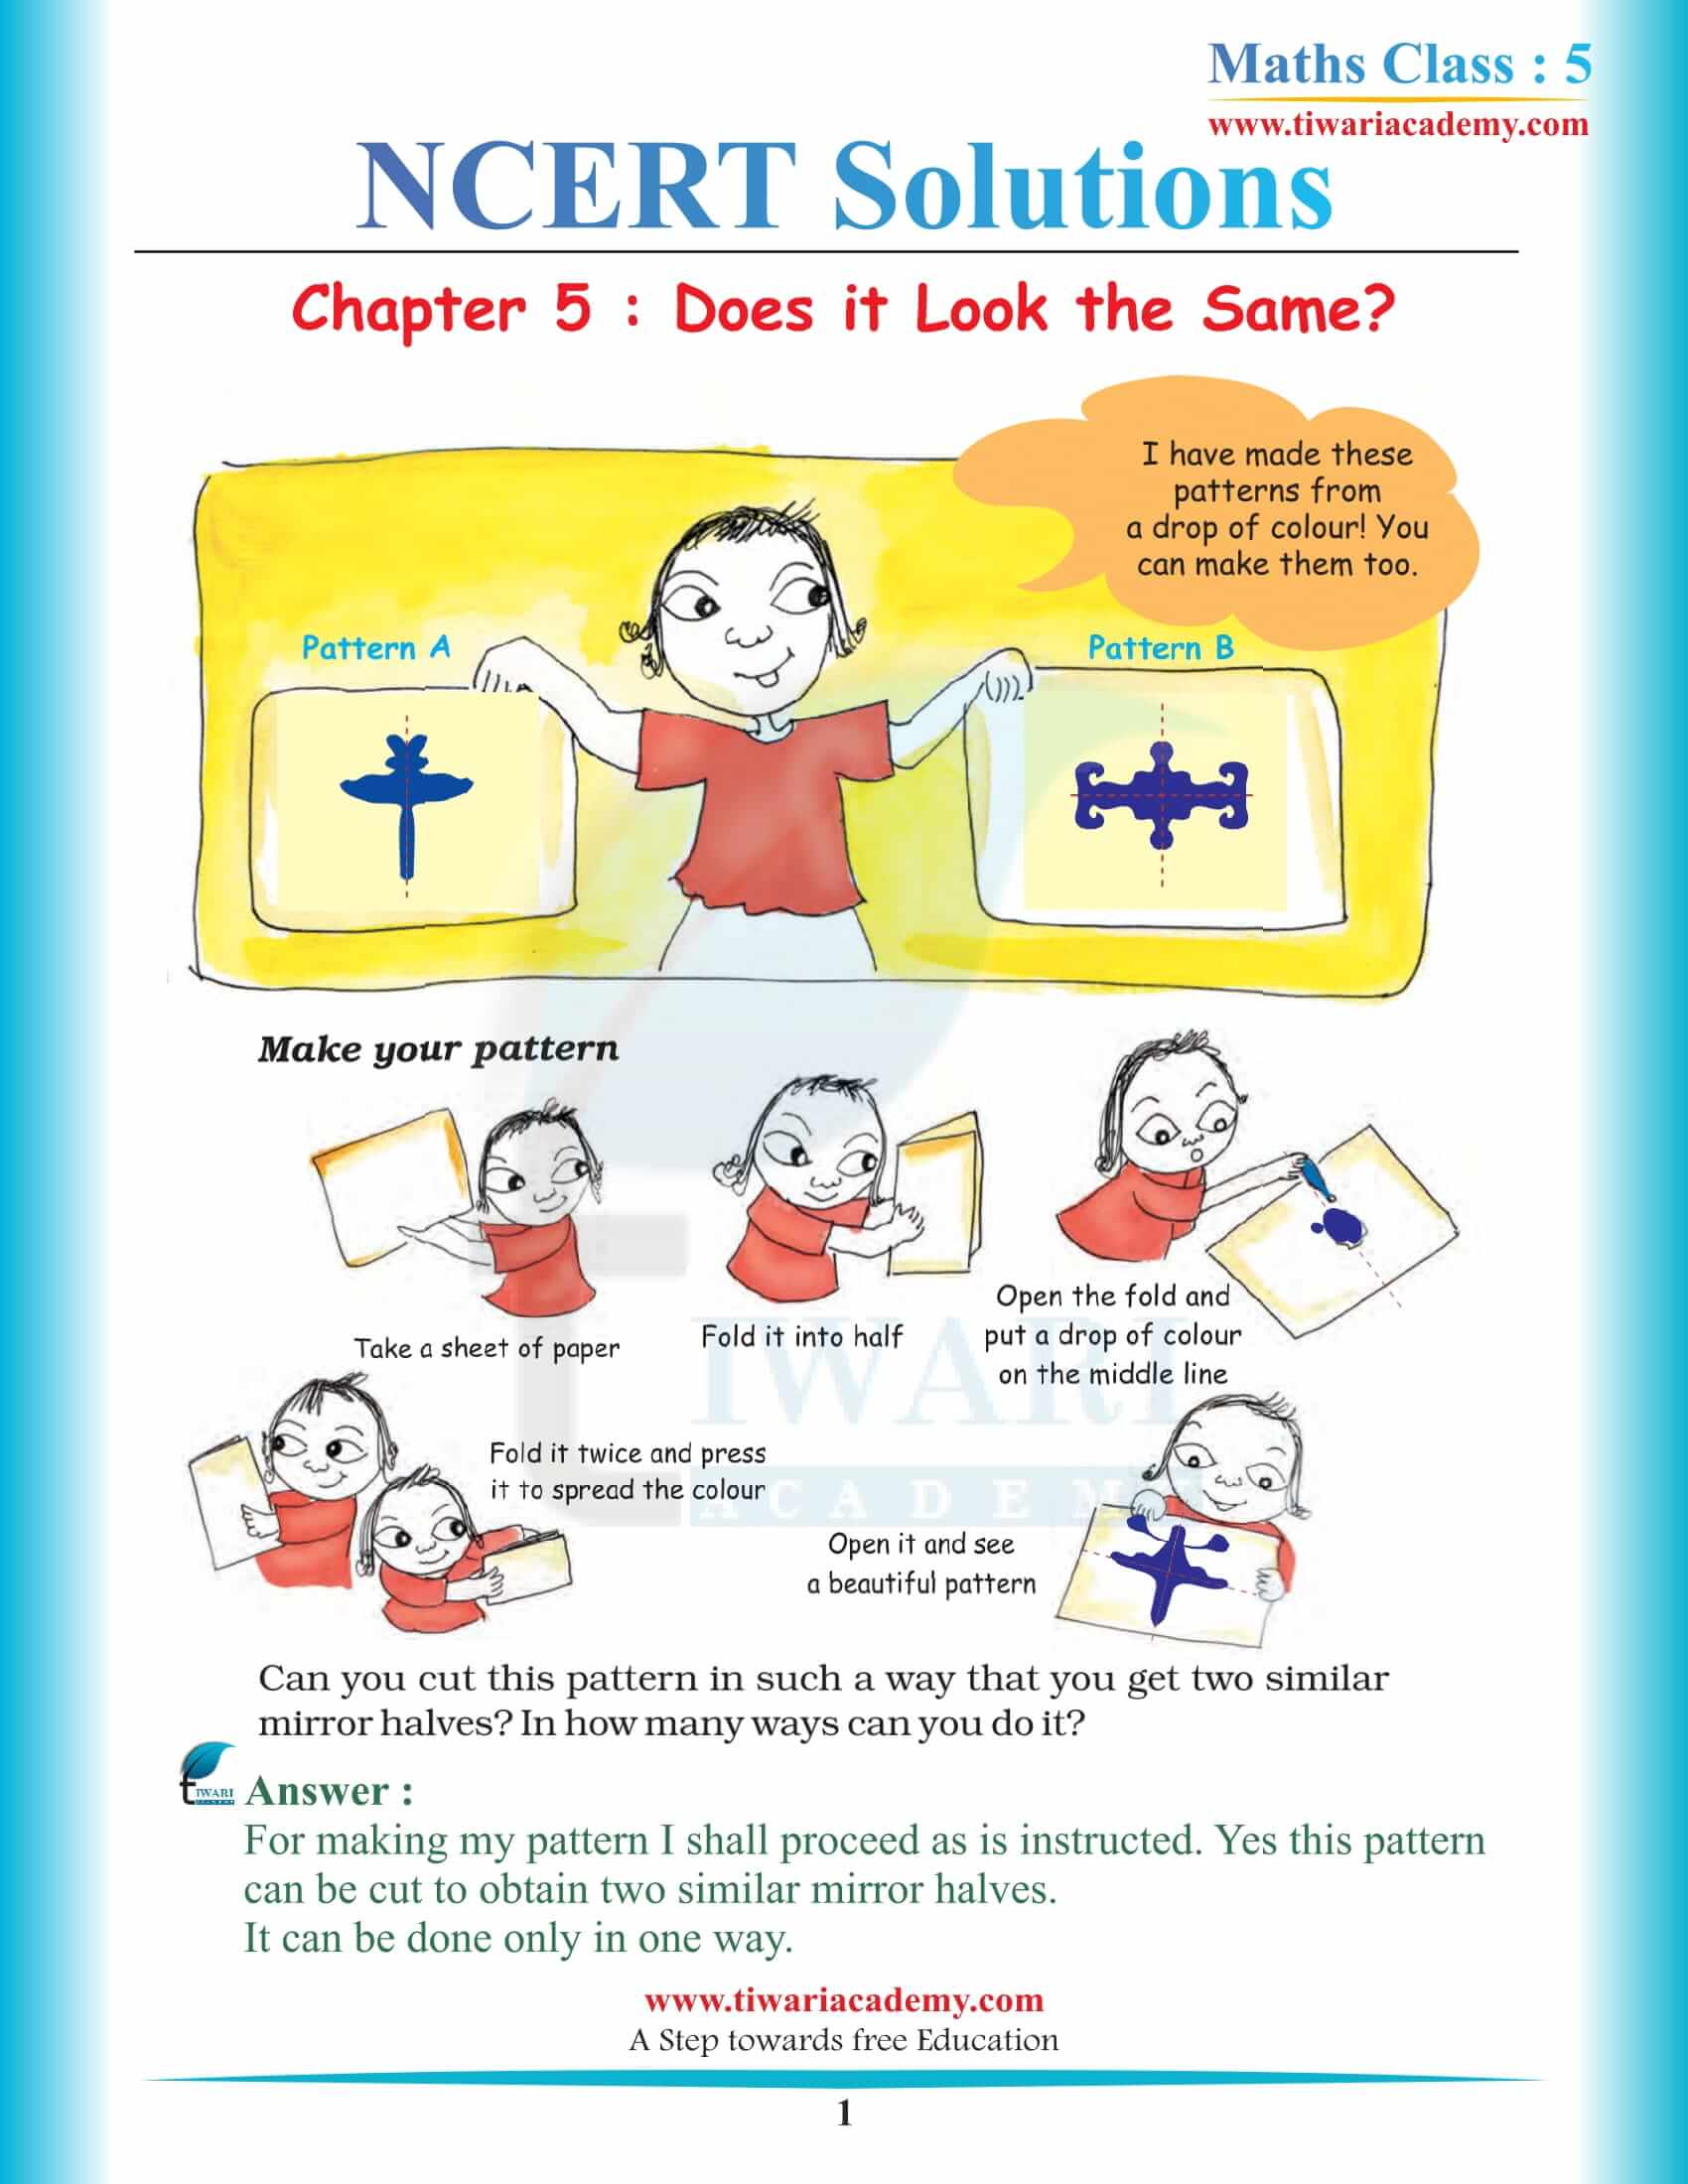 NCERT Solutions for Class 5 Maths Chapter 5